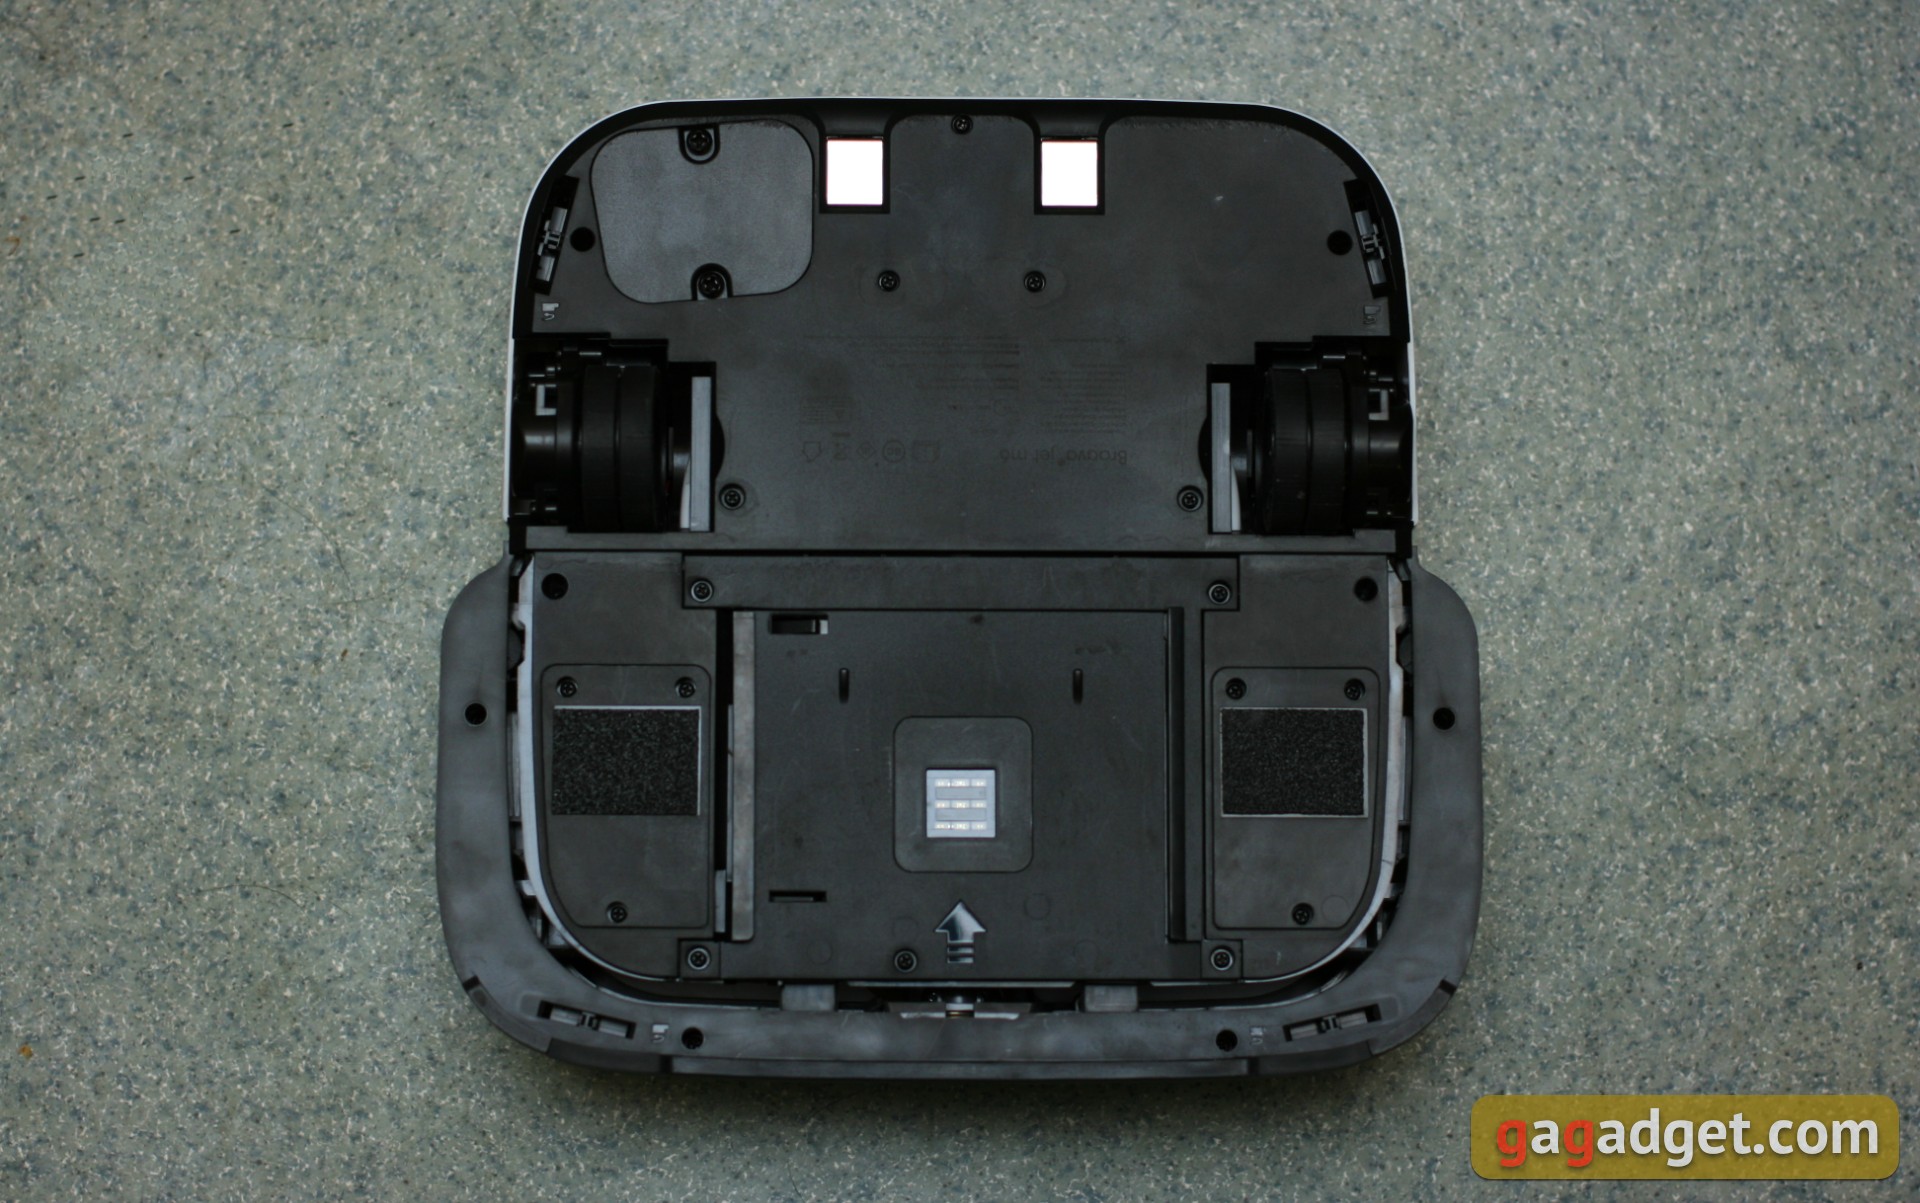 Обзор роботов-уборщиков iRobot Roomba s9+ и Braava jet m6: парное катание-45